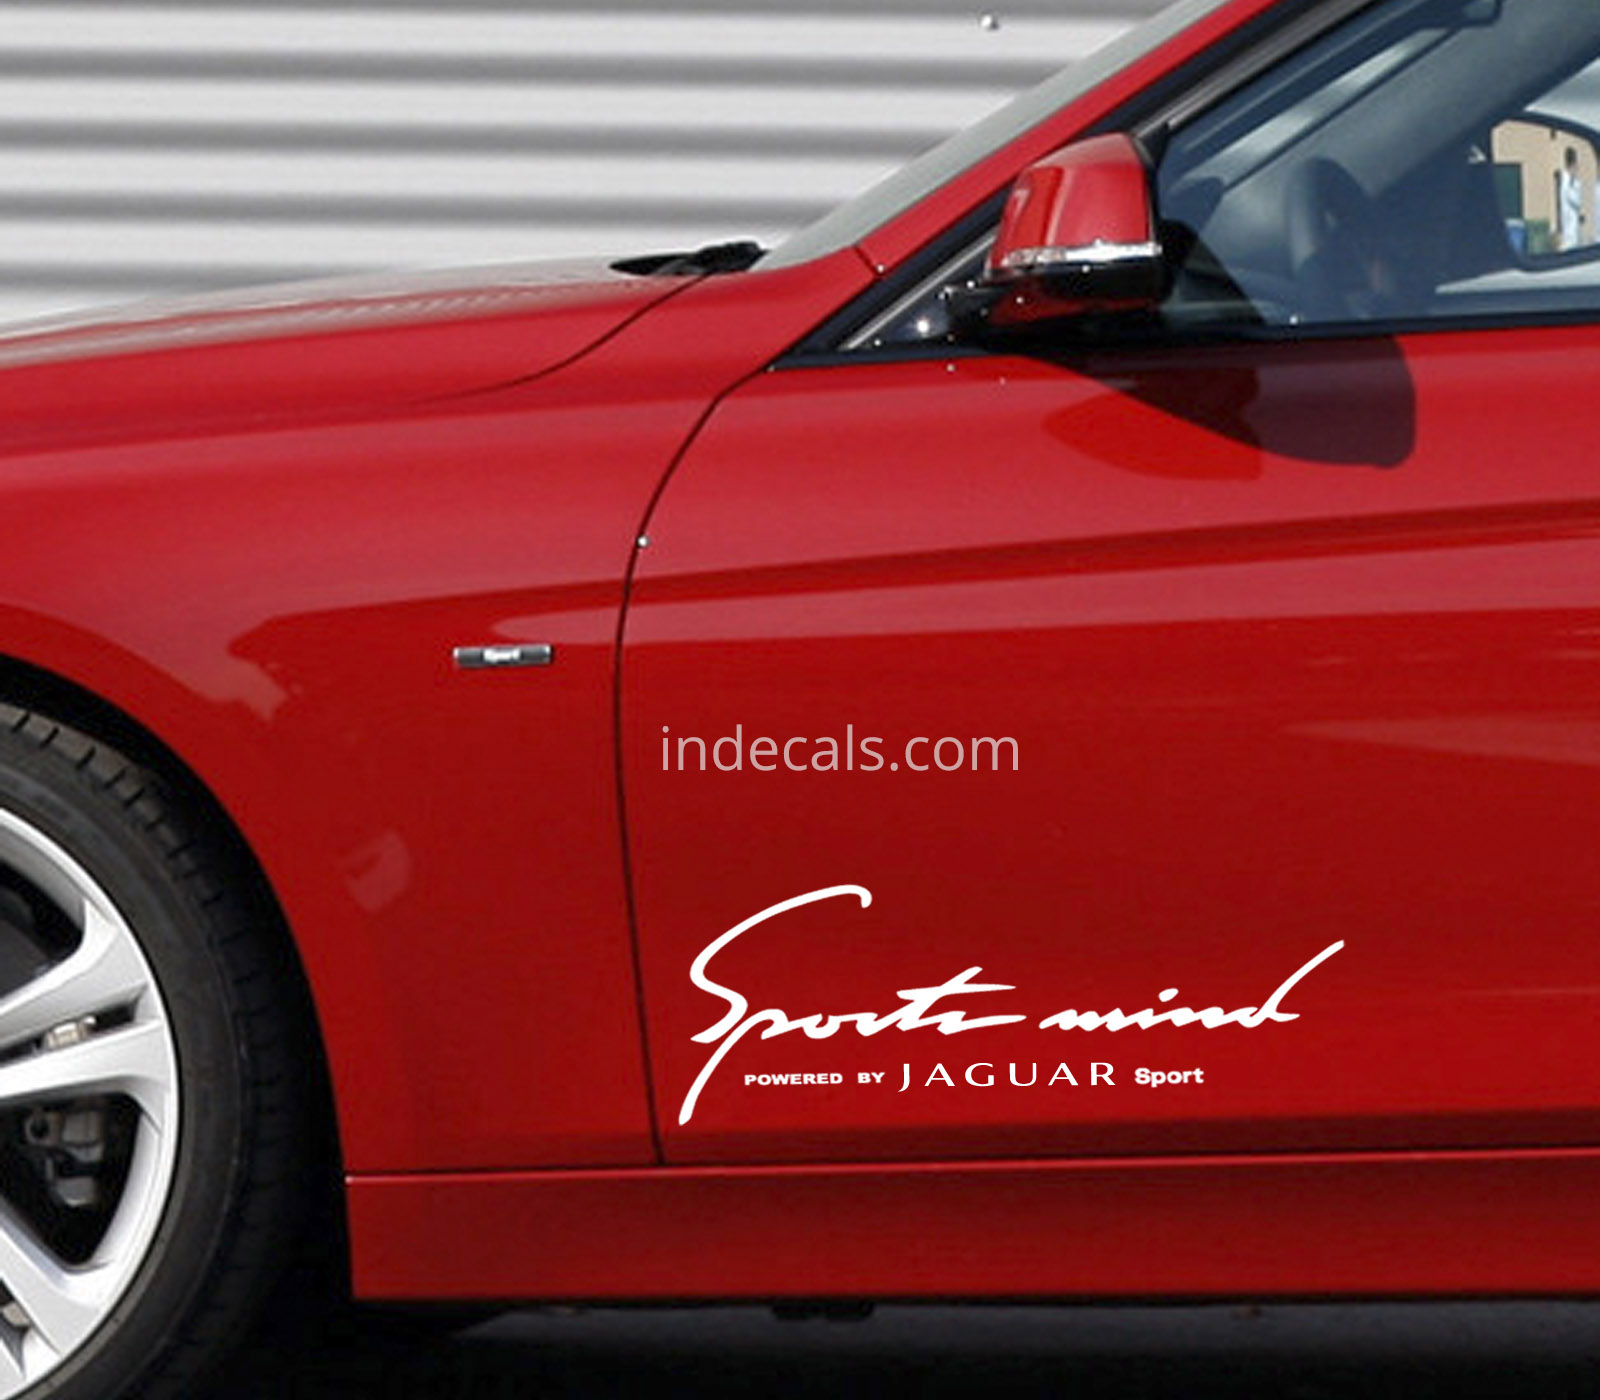 2 x Jaguar Sports Mind Stickers XL - White